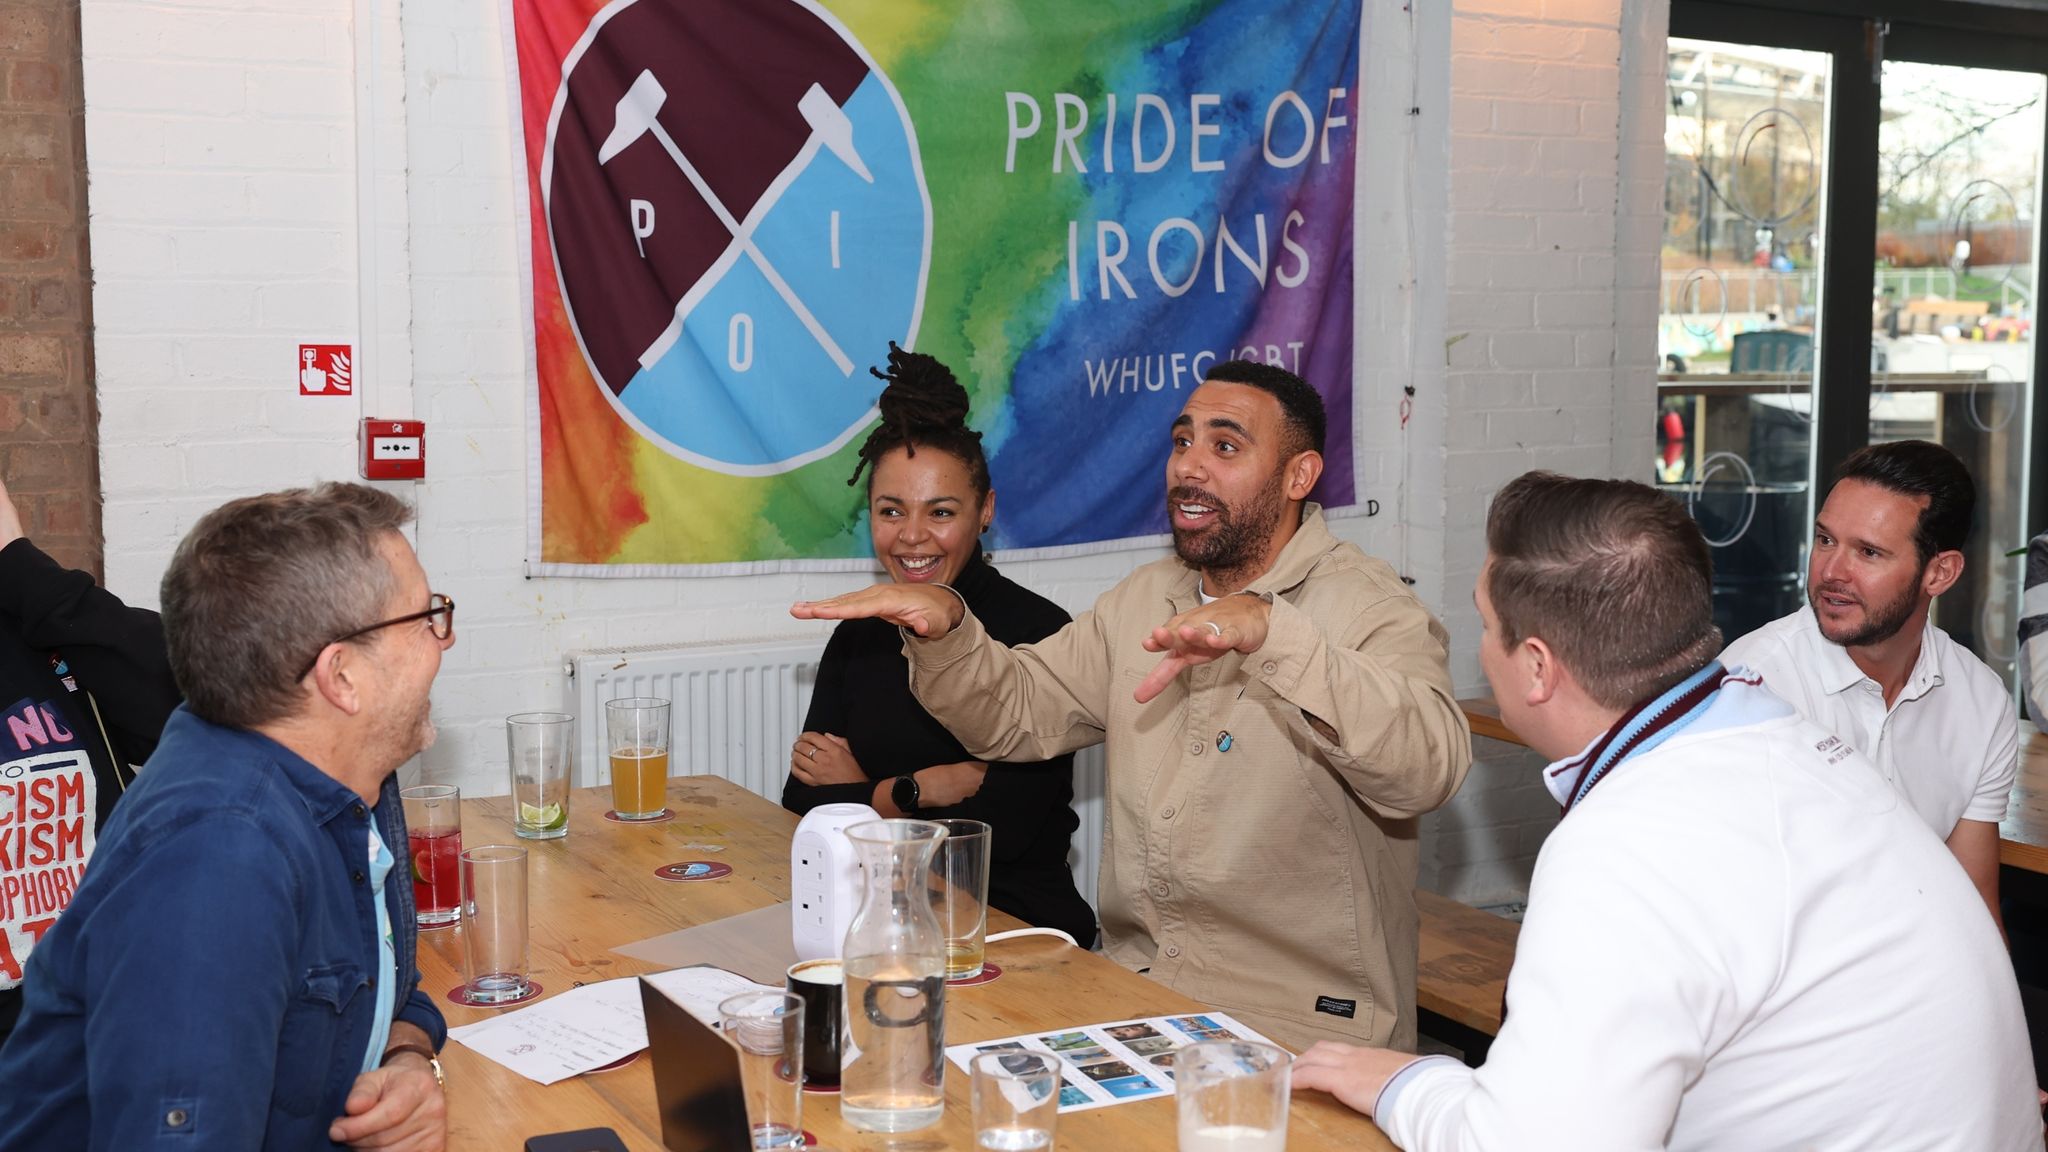 Rainbow Laces: West Ham's LGBTQ+ fan group praises club after 'Pride ...